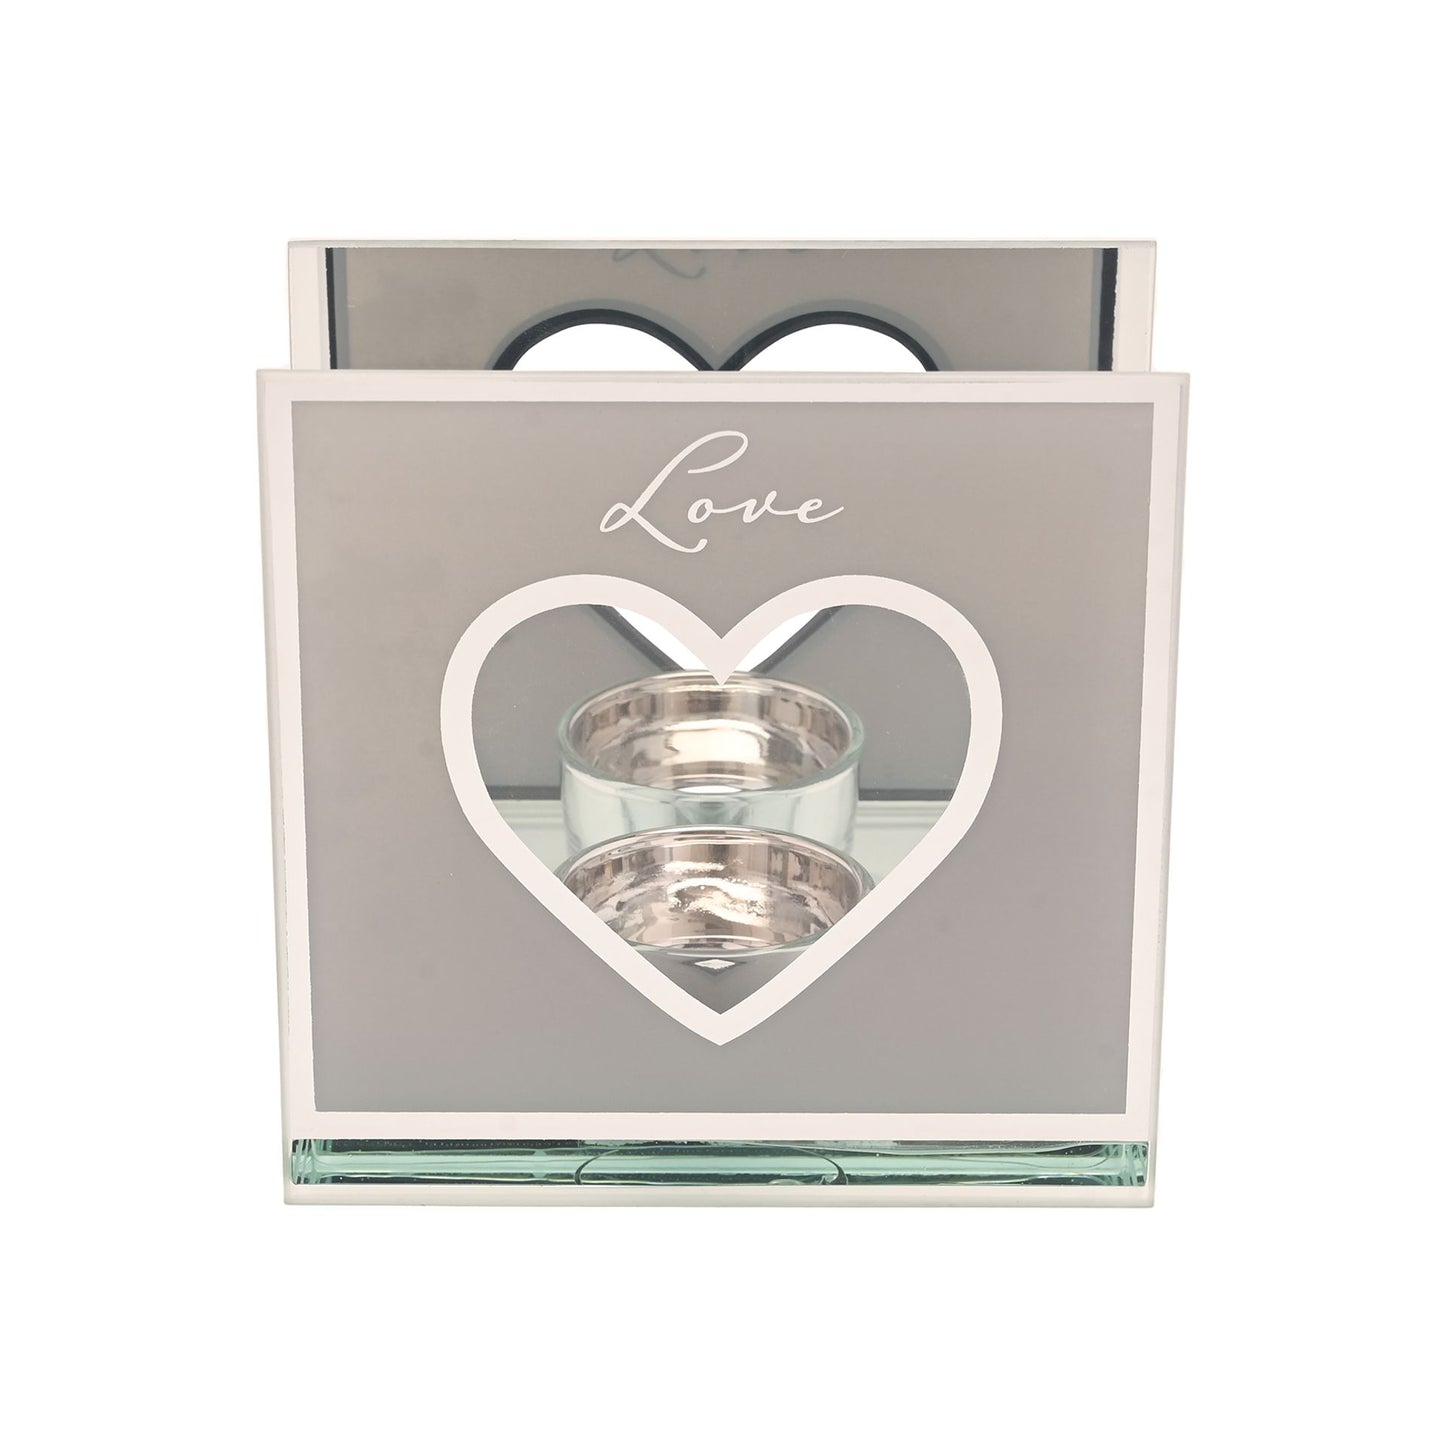 Amore Heart Tea Light Holder - Mirrored Border - "Love"